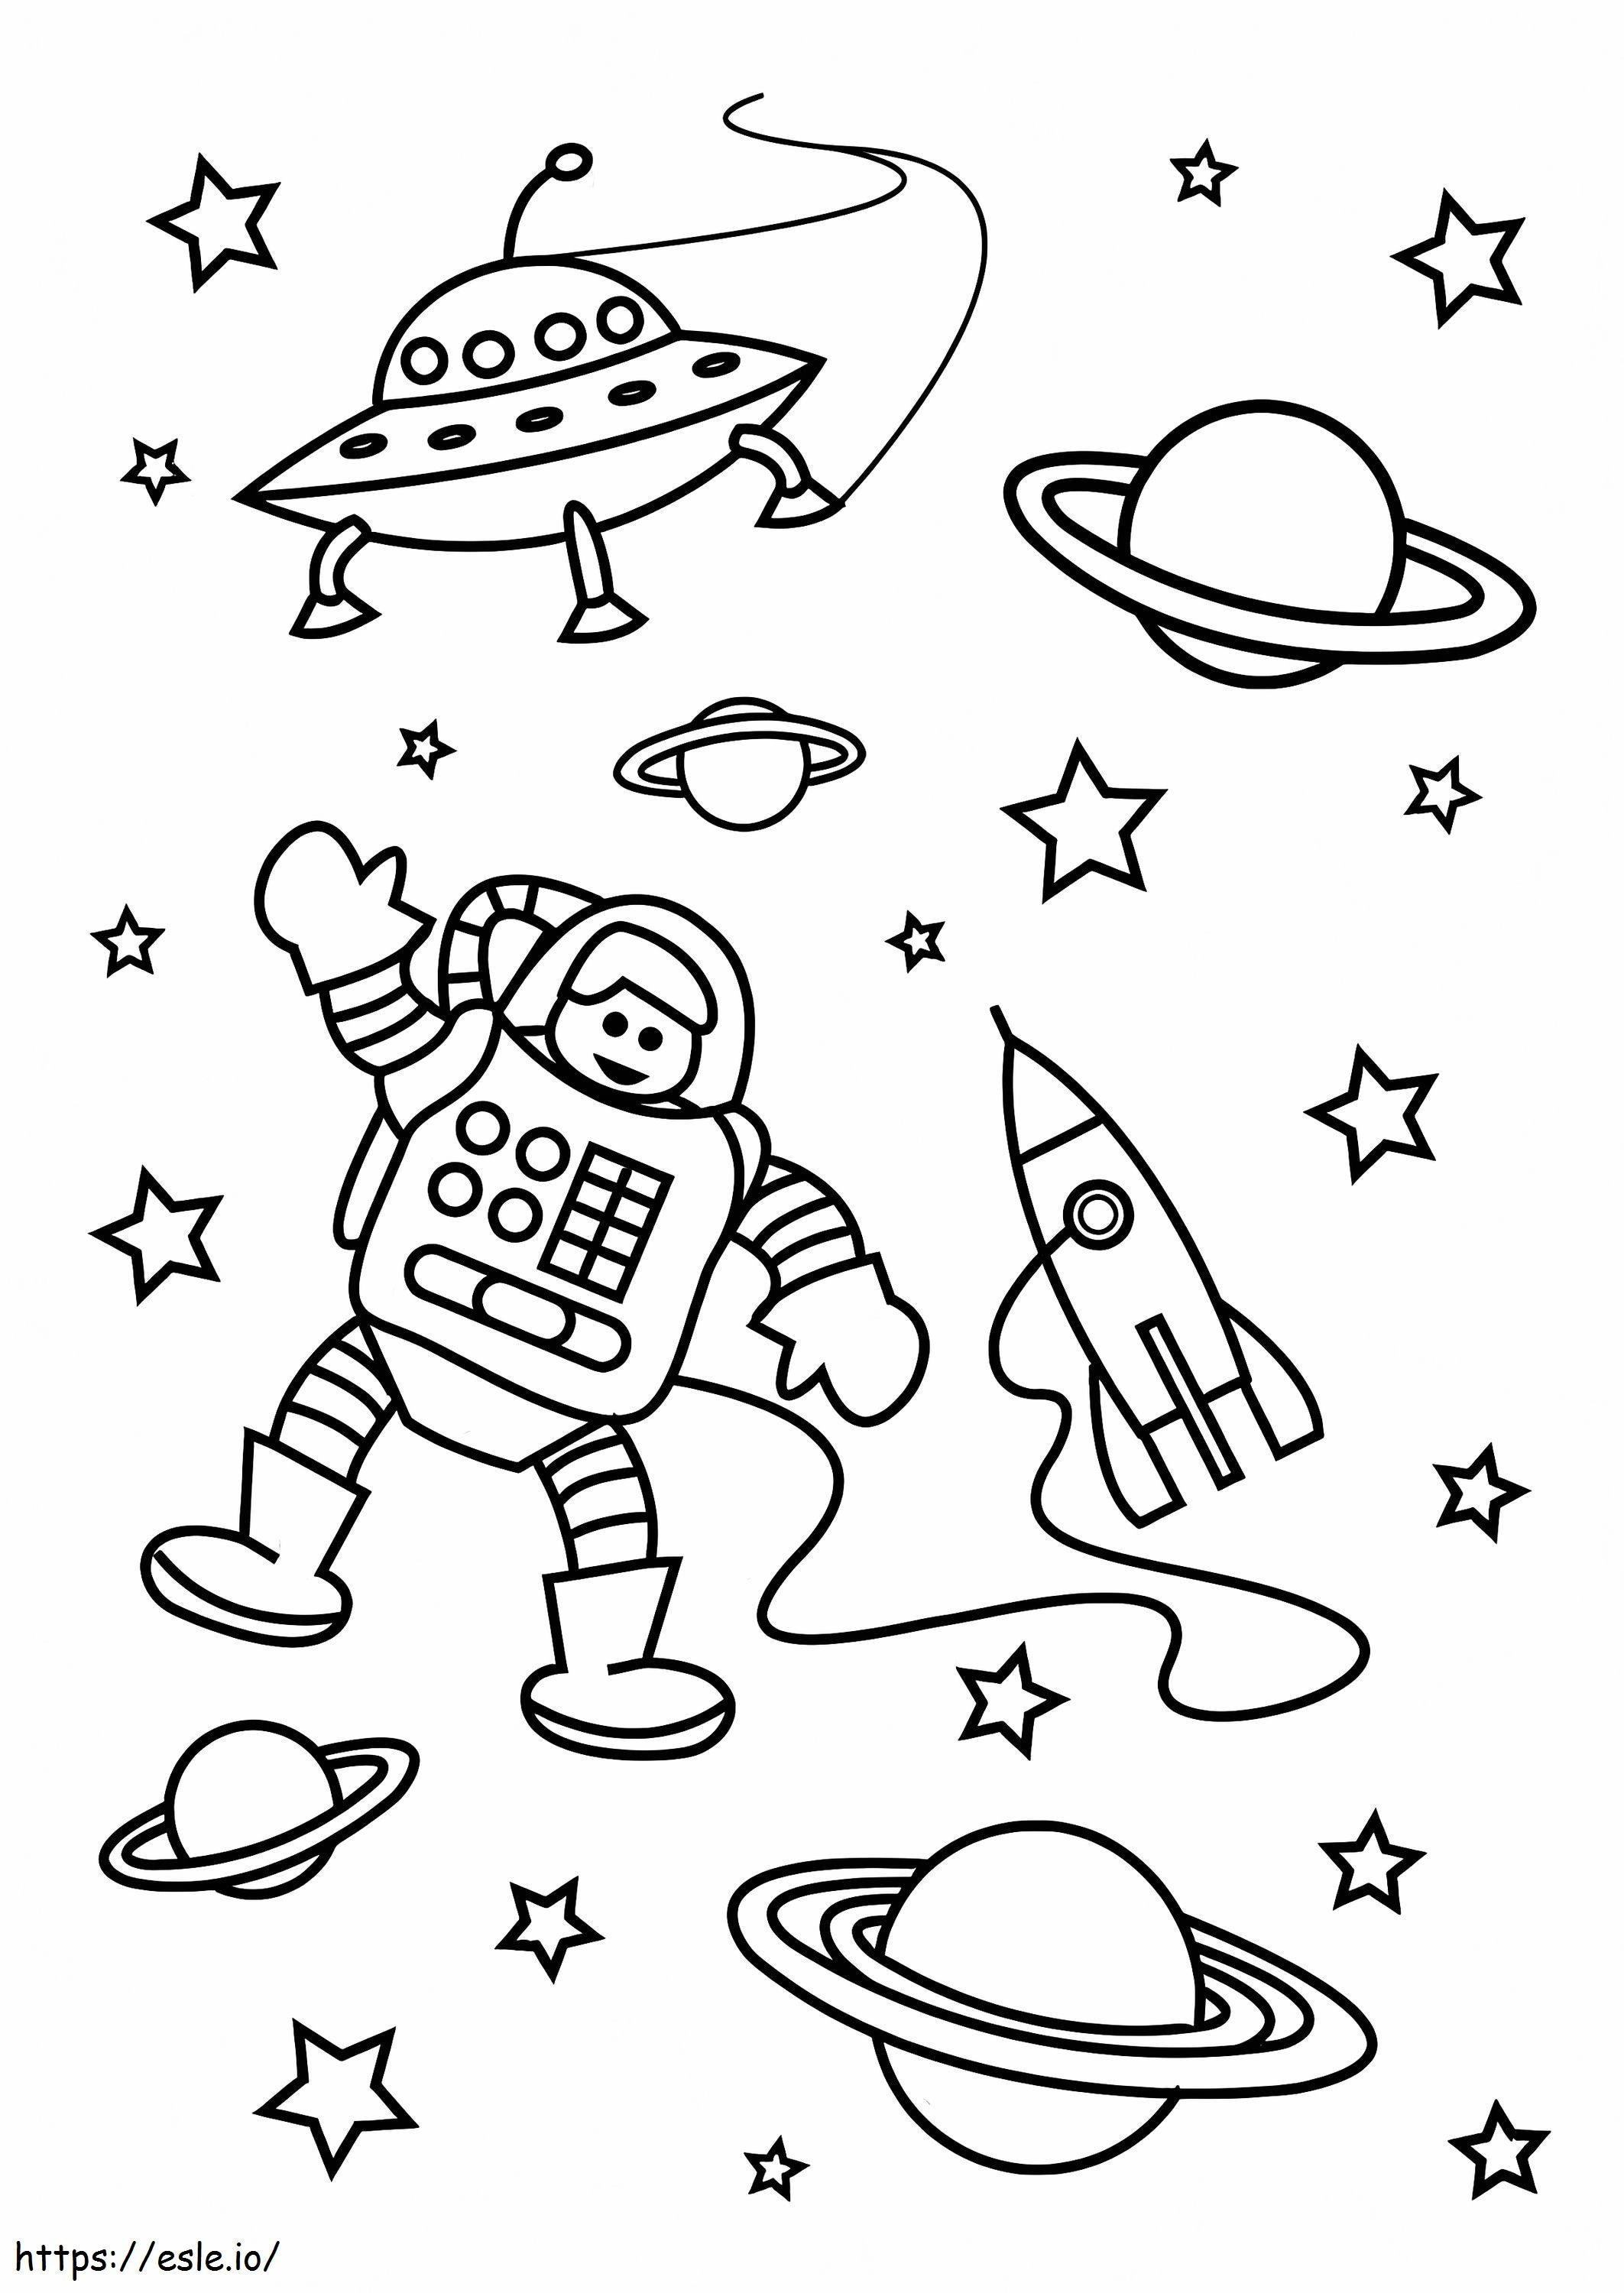 O astronauta no espaço sideral para colorir